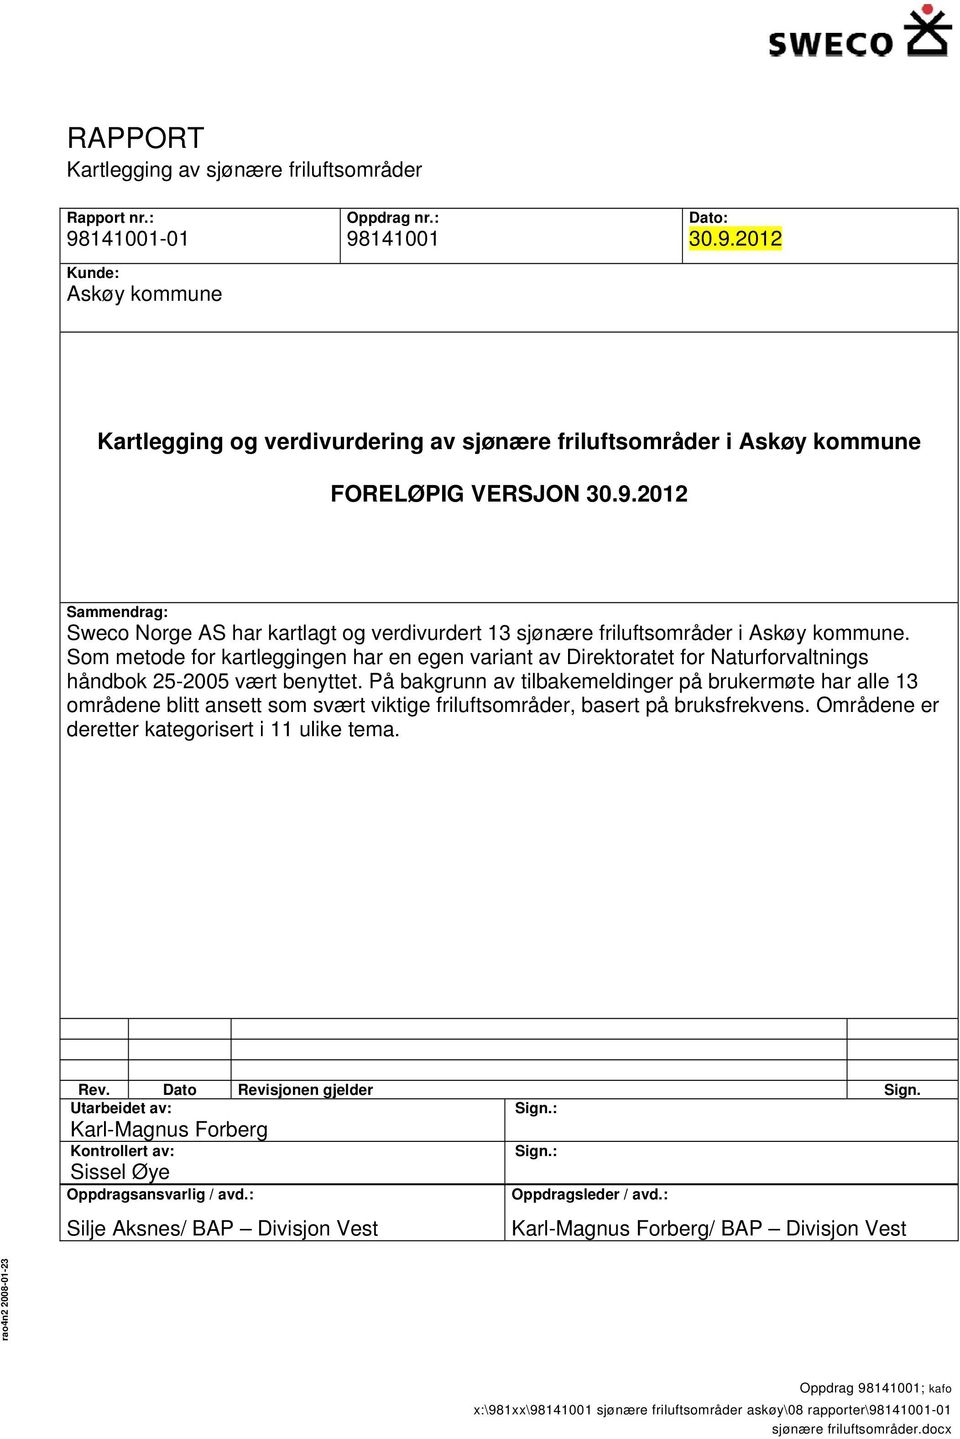 sjønære friluftsområder i Askøy kommune. Som metode for kartleggingen har en egen variant av Direktoratet for Naturforvaltnings håndbok 25-2005 vært benyttet.